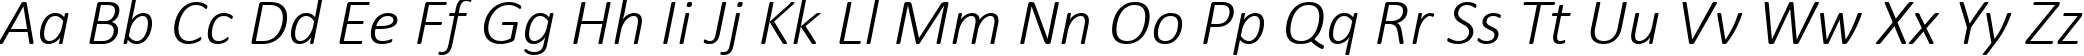 Пример написания английского алфавита шрифтом Calibri Light Italic